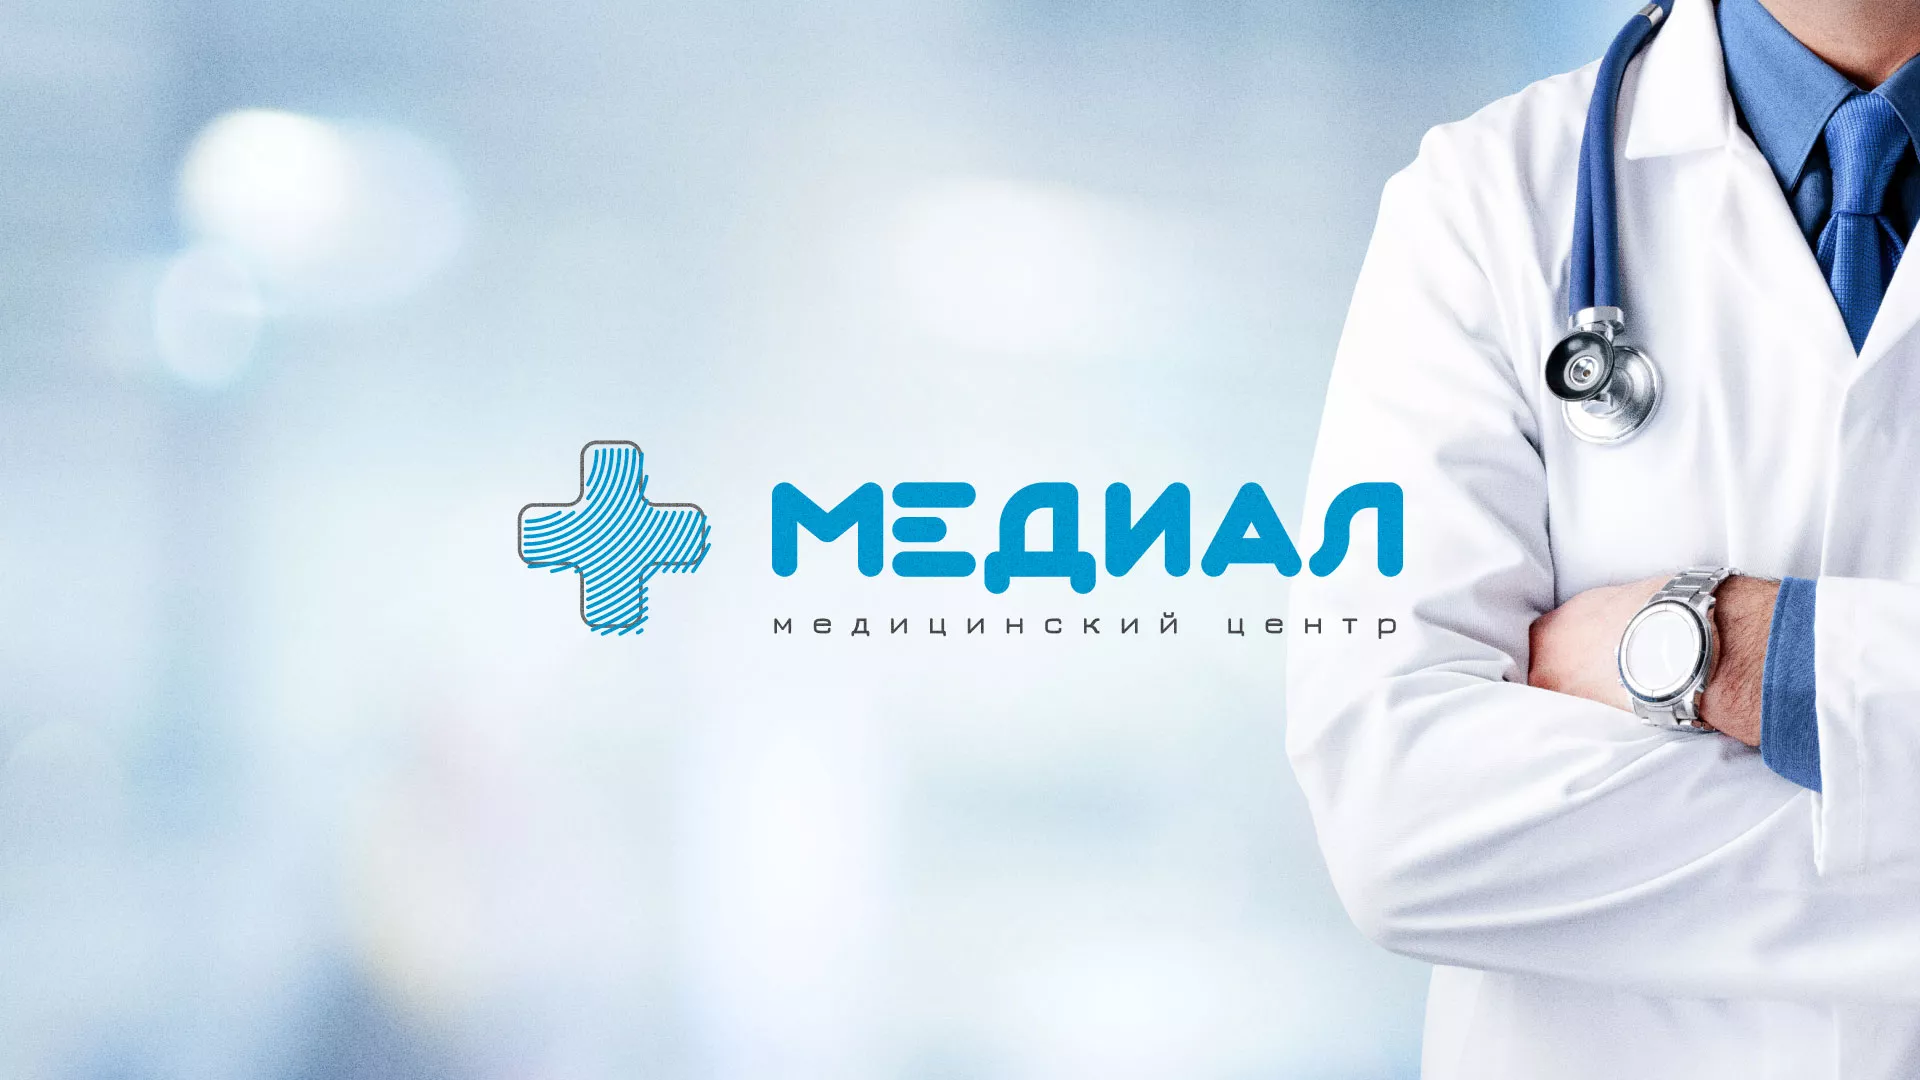 Создание сайта для медицинского центра «Медиал» в Калининске